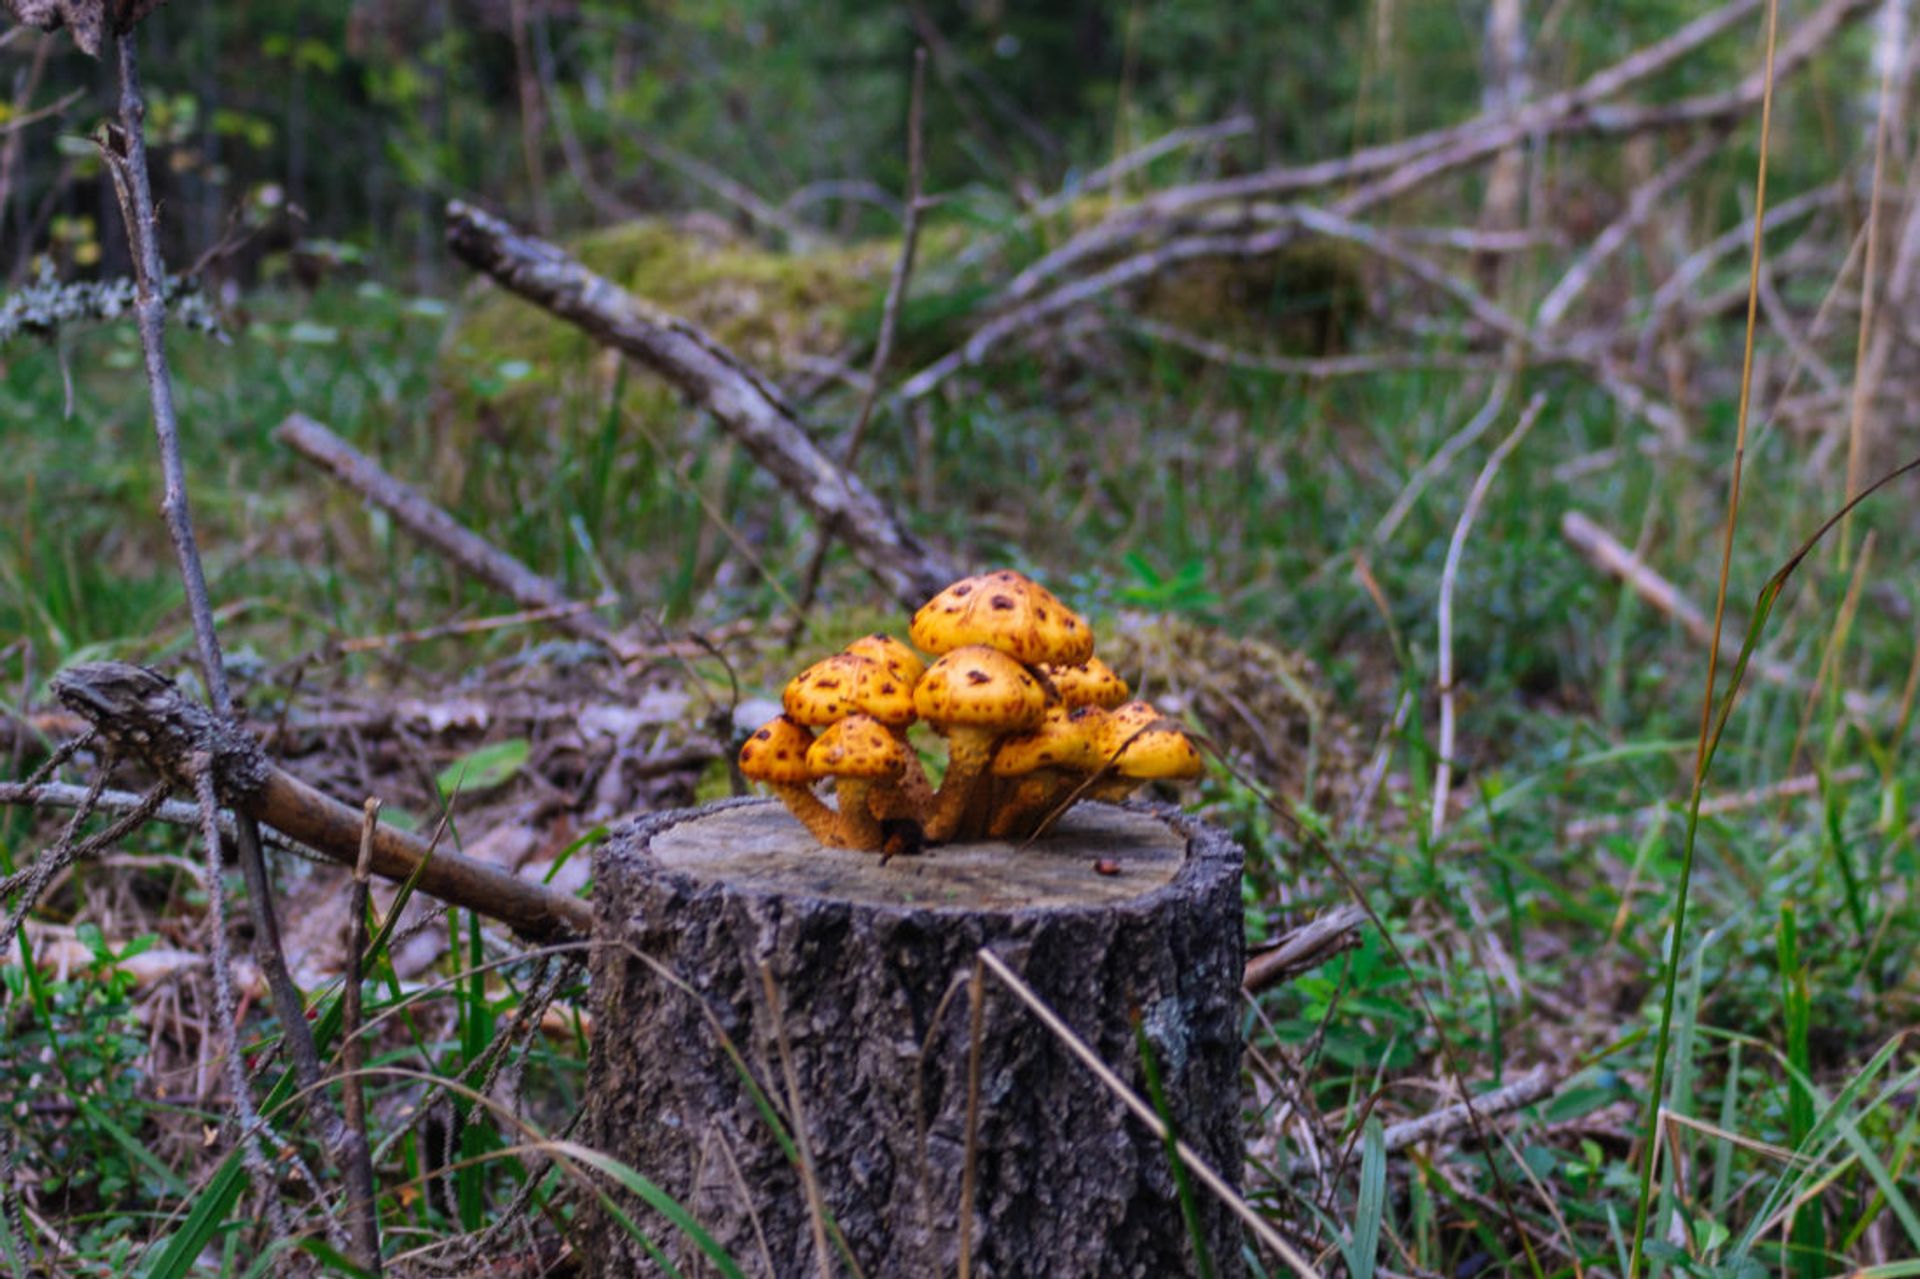 Closeup of mushrooms on a tree stump.